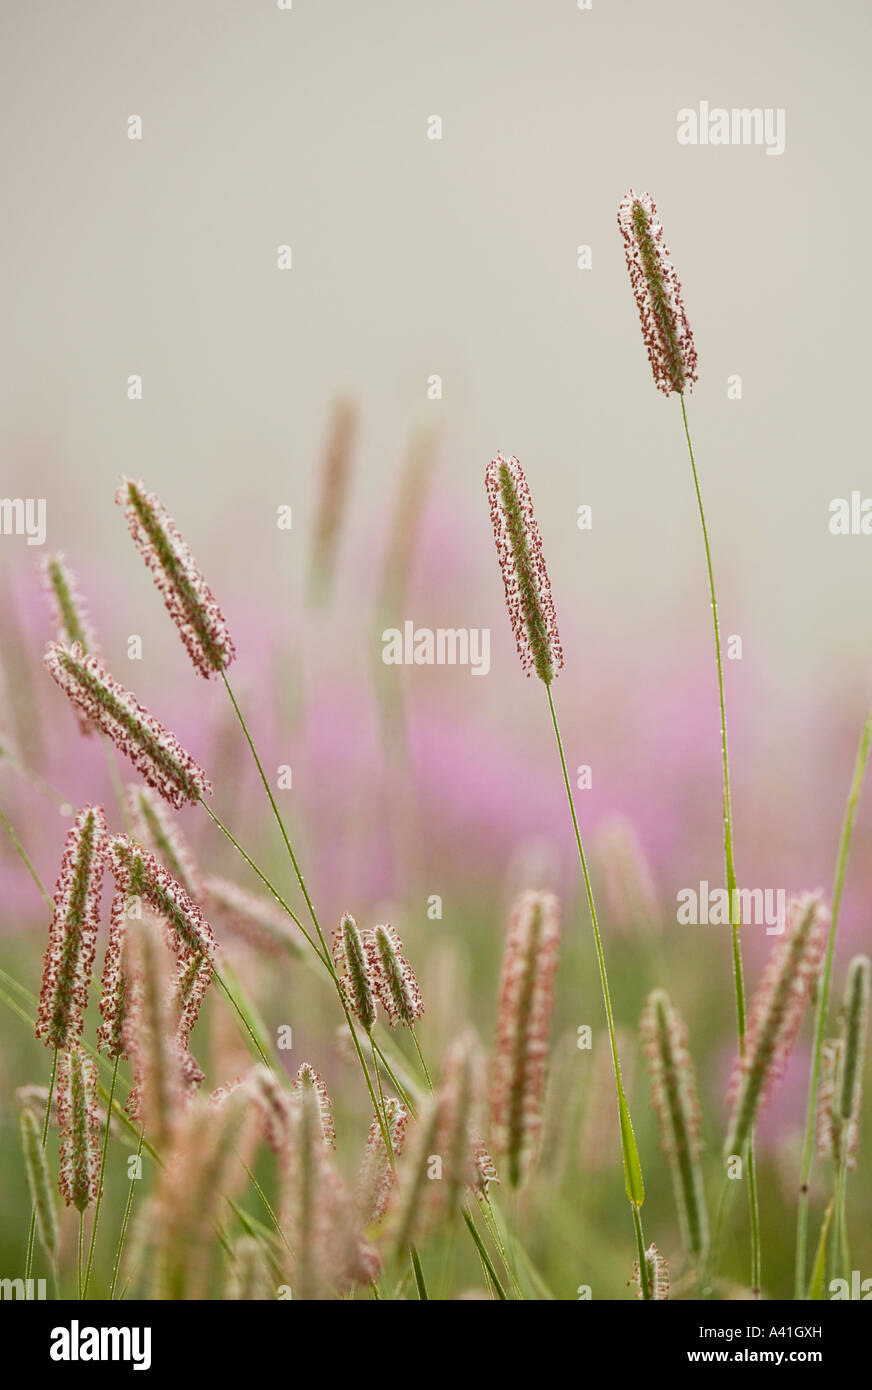 Timothy Gras (Phleum pratense) Blühende Gräser in Misty alt - Feld mit spät - Sommer Blumen, grössere Sudbury, Ontario, Kanada Stockfoto